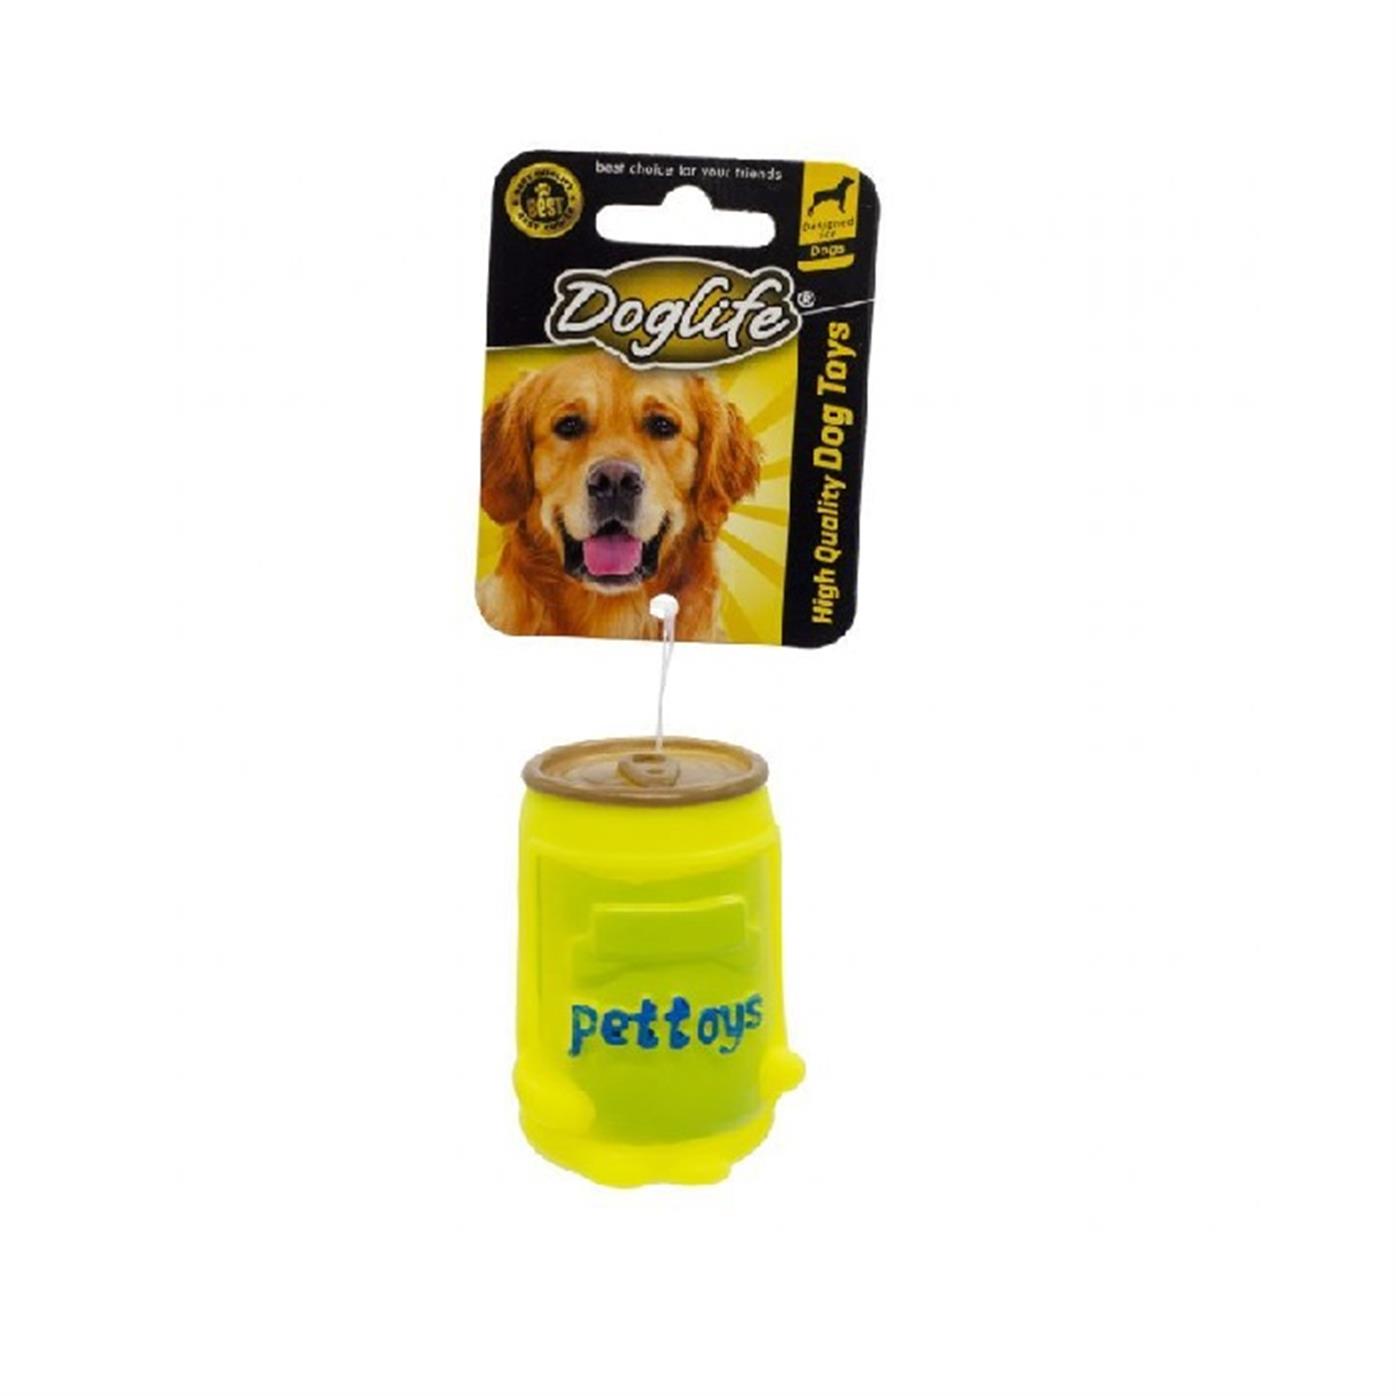 Doglife Storage Oyuncak - 8681475622892 - BR-202289 - PET GROSS ® | Evcil  Hayvanlarınız İçin Her Şey PetGross'ta - Dog Life